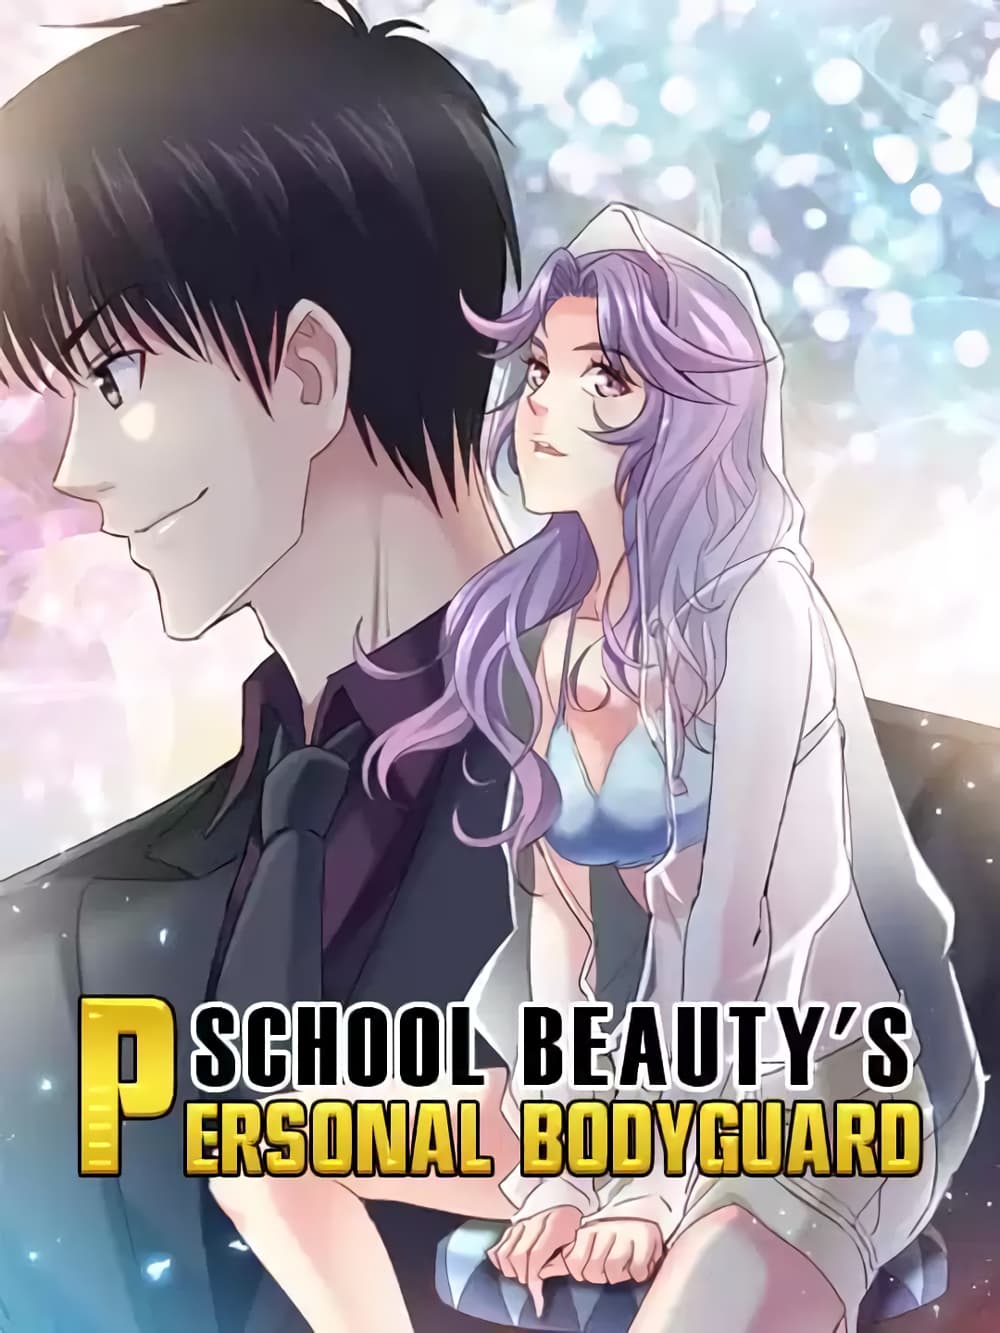 School Beauty's Bodyguard 298 (1)